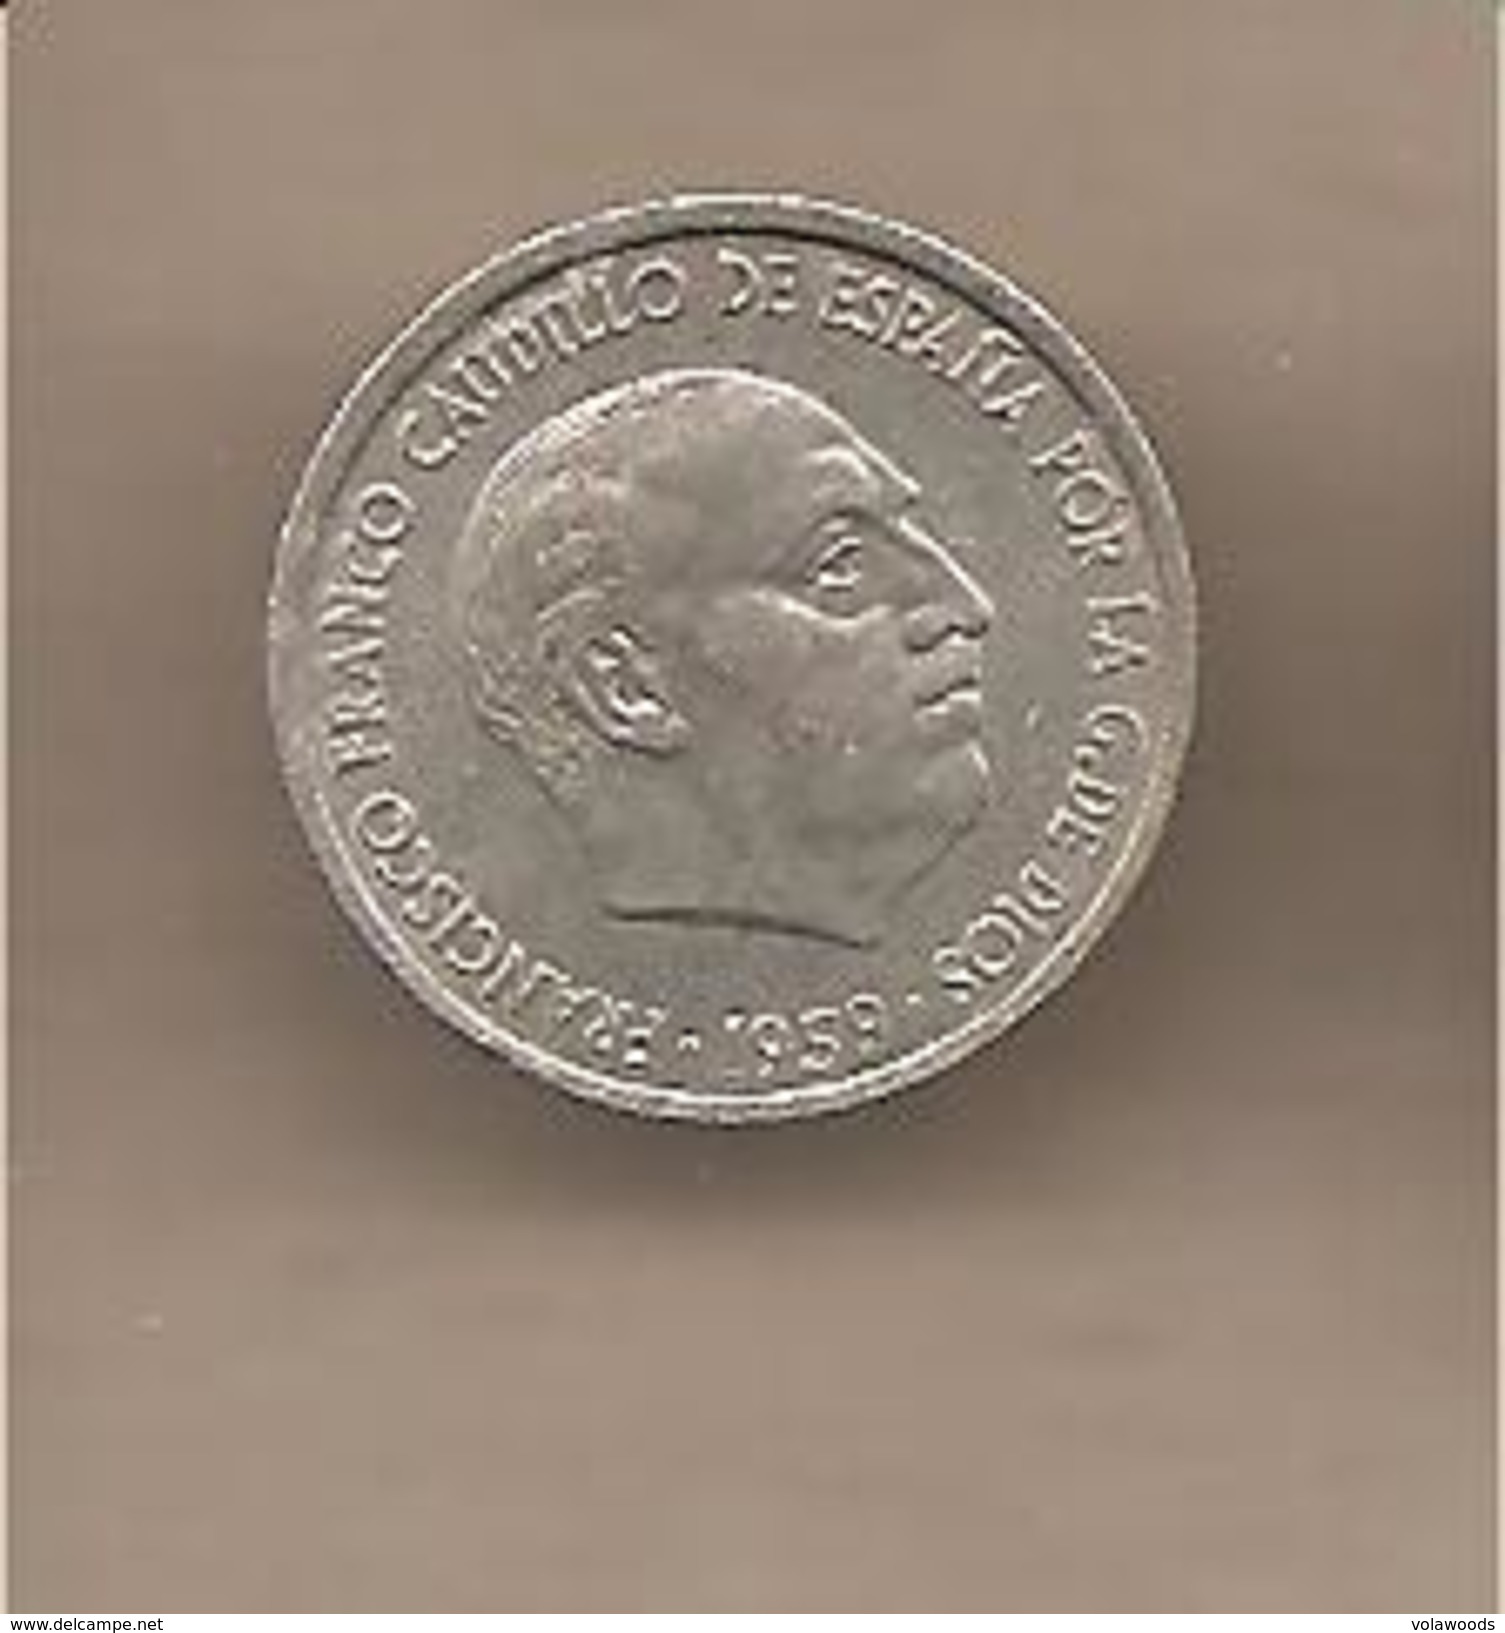 Spagna - Moneta Circolata Da 10 Centesimi - 1959 - 10 Centimos